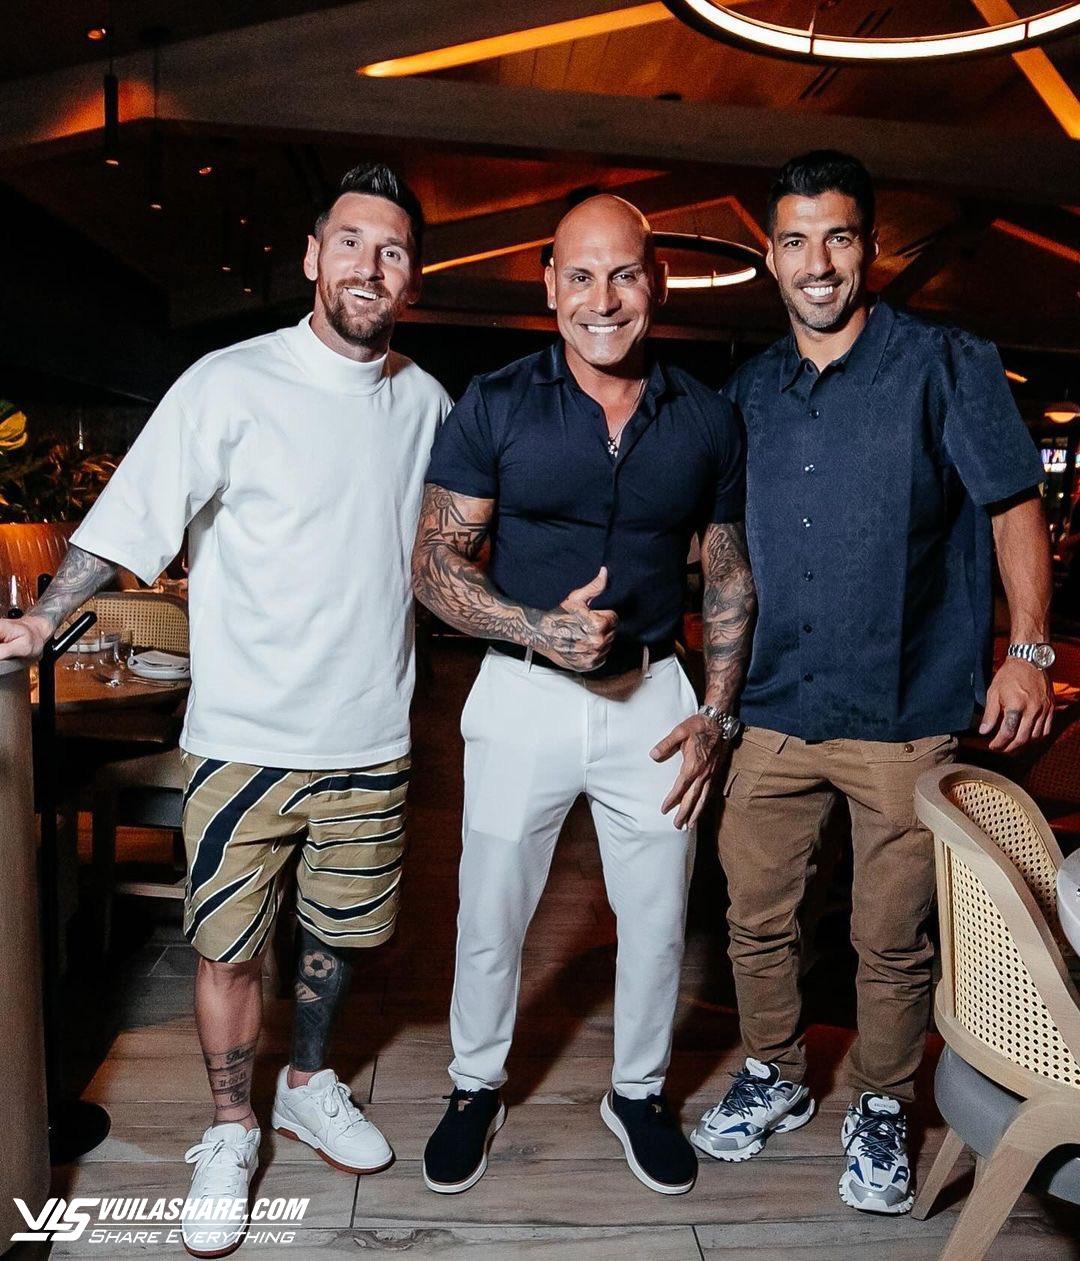 David Beckham gia nhập cuộc sống bình dị cùng Messi tại Miami, đi săn hàng giảm giá- Ảnh 3.